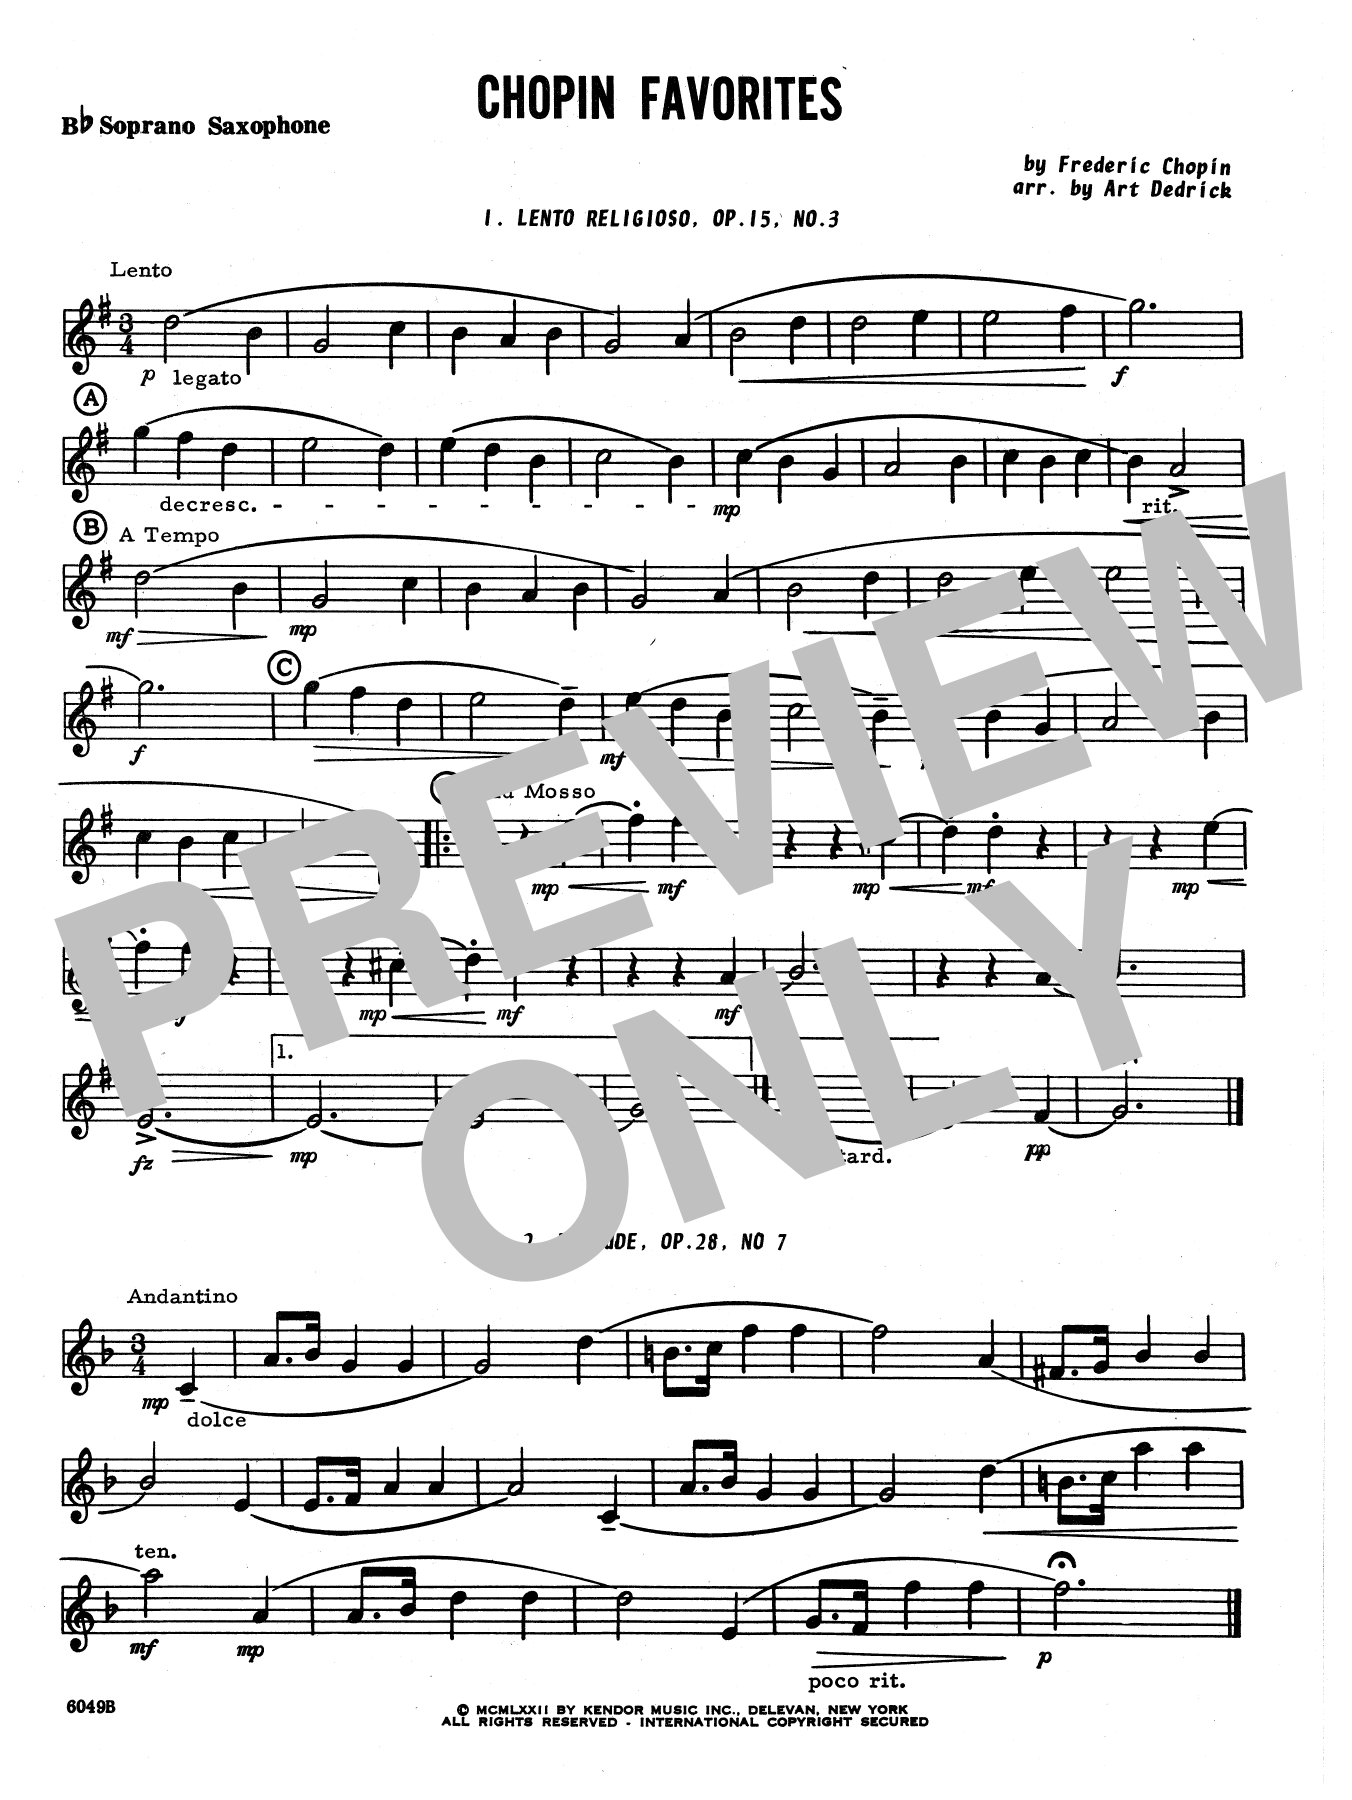 Download Art Dedrick Chopin Favorites - Bb Soprano Sax Sheet Music